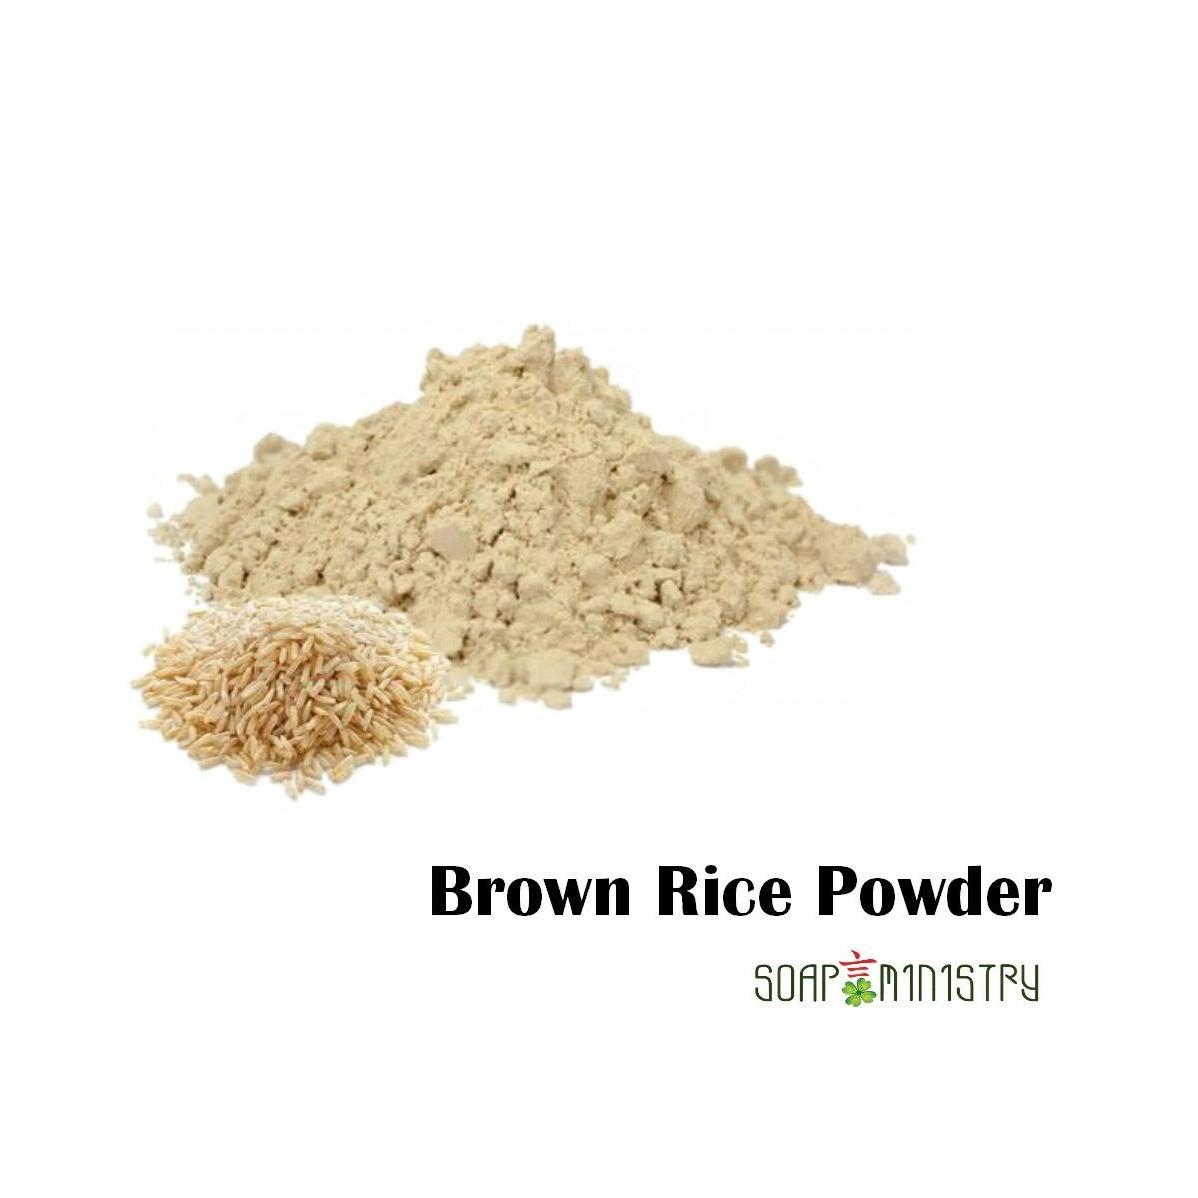 Brown Rice Powder 500g